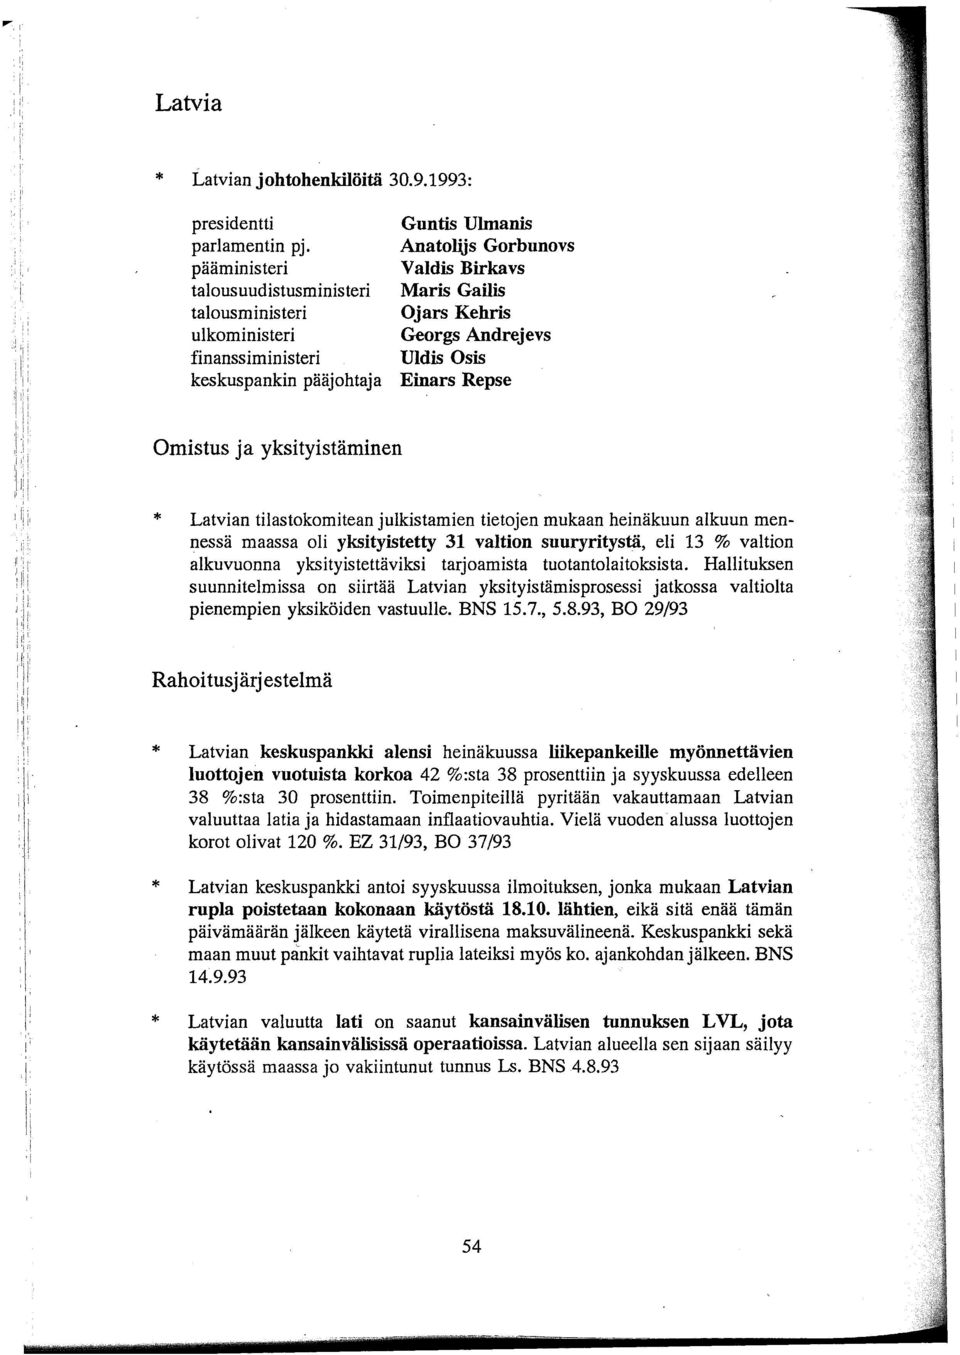 Einars Repse Omistus ja yksityistäminen Latvian tilastokomitean julkistamien tietojen mukaan heinäkuun alkuun mennessä maassa oli yksityistetty 31 valtion suuryritystä, eli 13 % valtion alkuvuonna